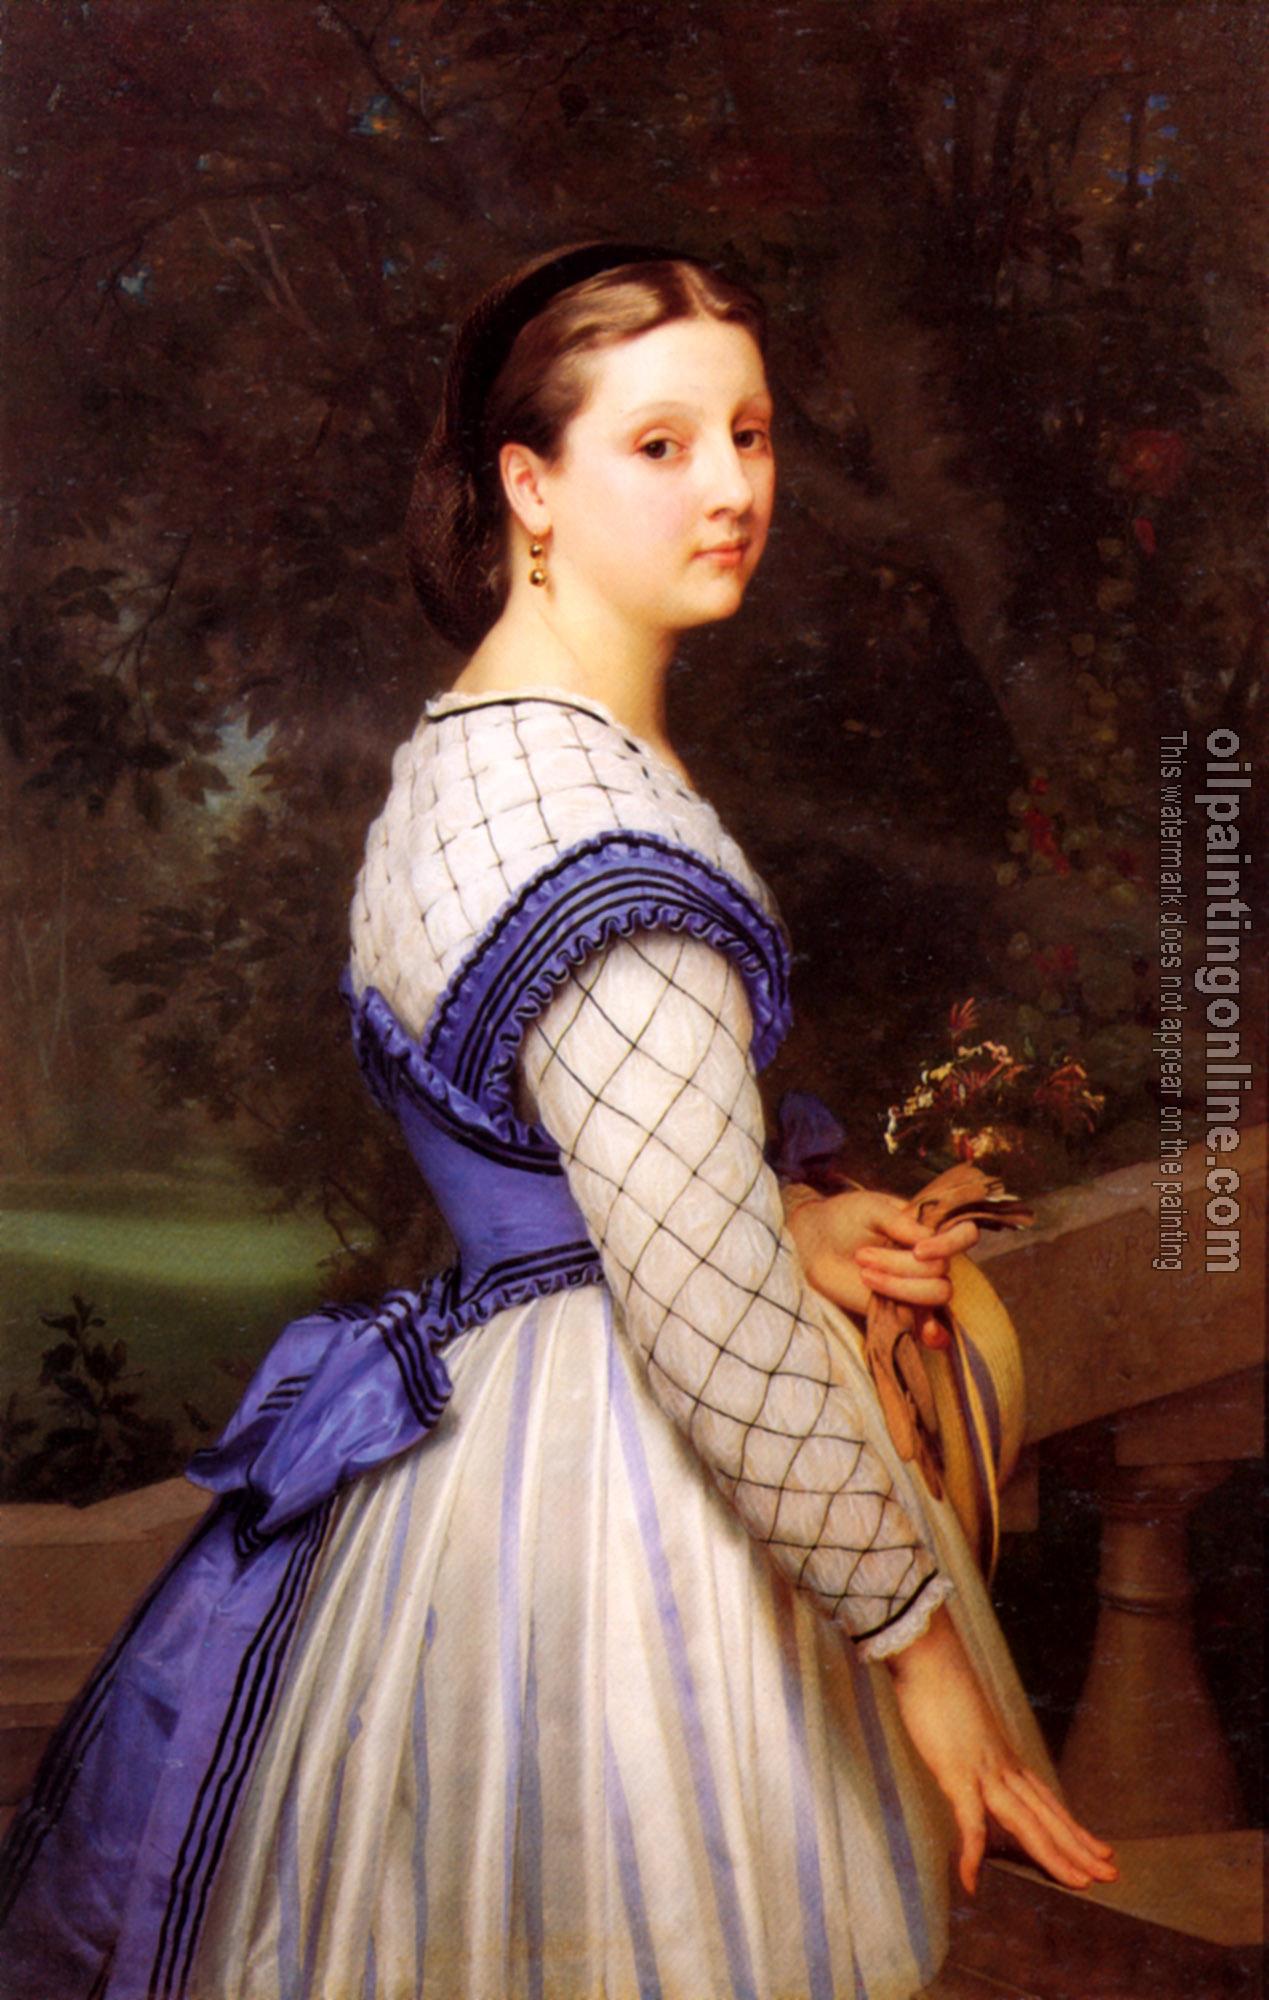 Bouguereau, William-Adolphe - La Comtesse de Montholon, The Countess de Montholon